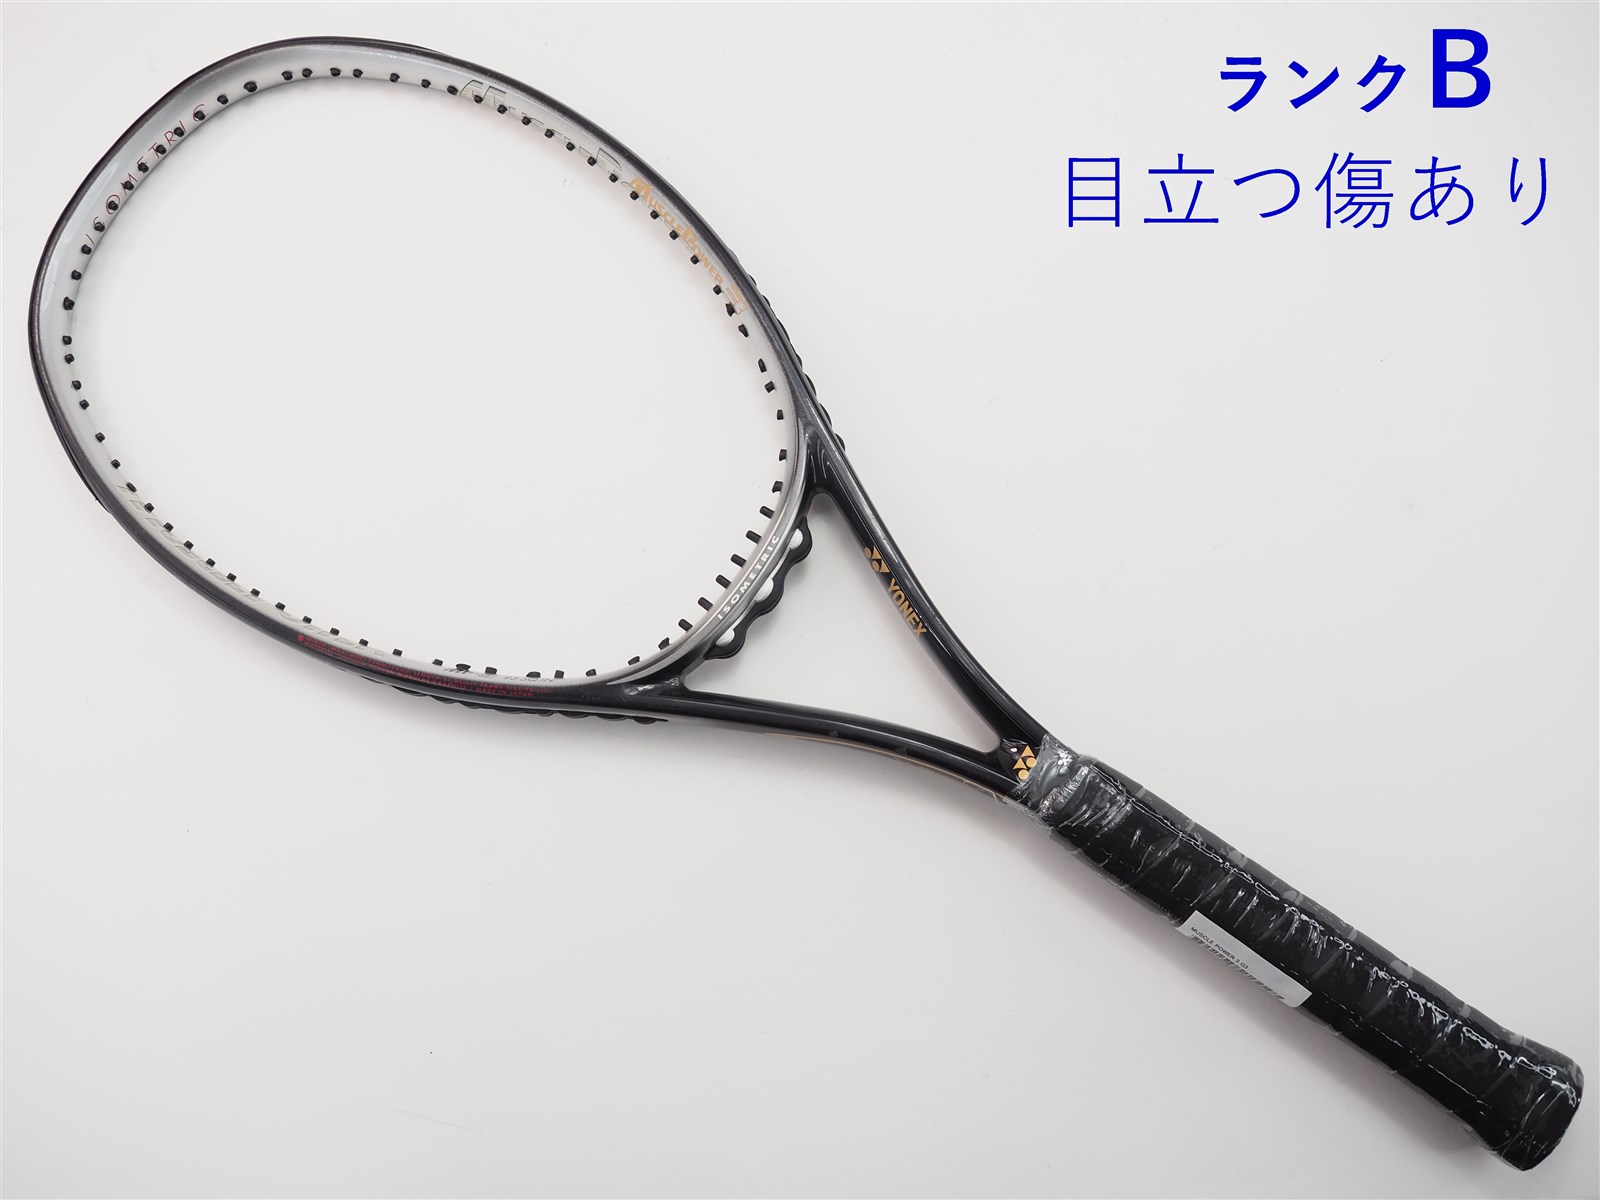 【中古】ヨネックス マッスルパワー 3YONEX MUSCLE POWER 3(G3)【中古 テニスラケット】【送料無料】